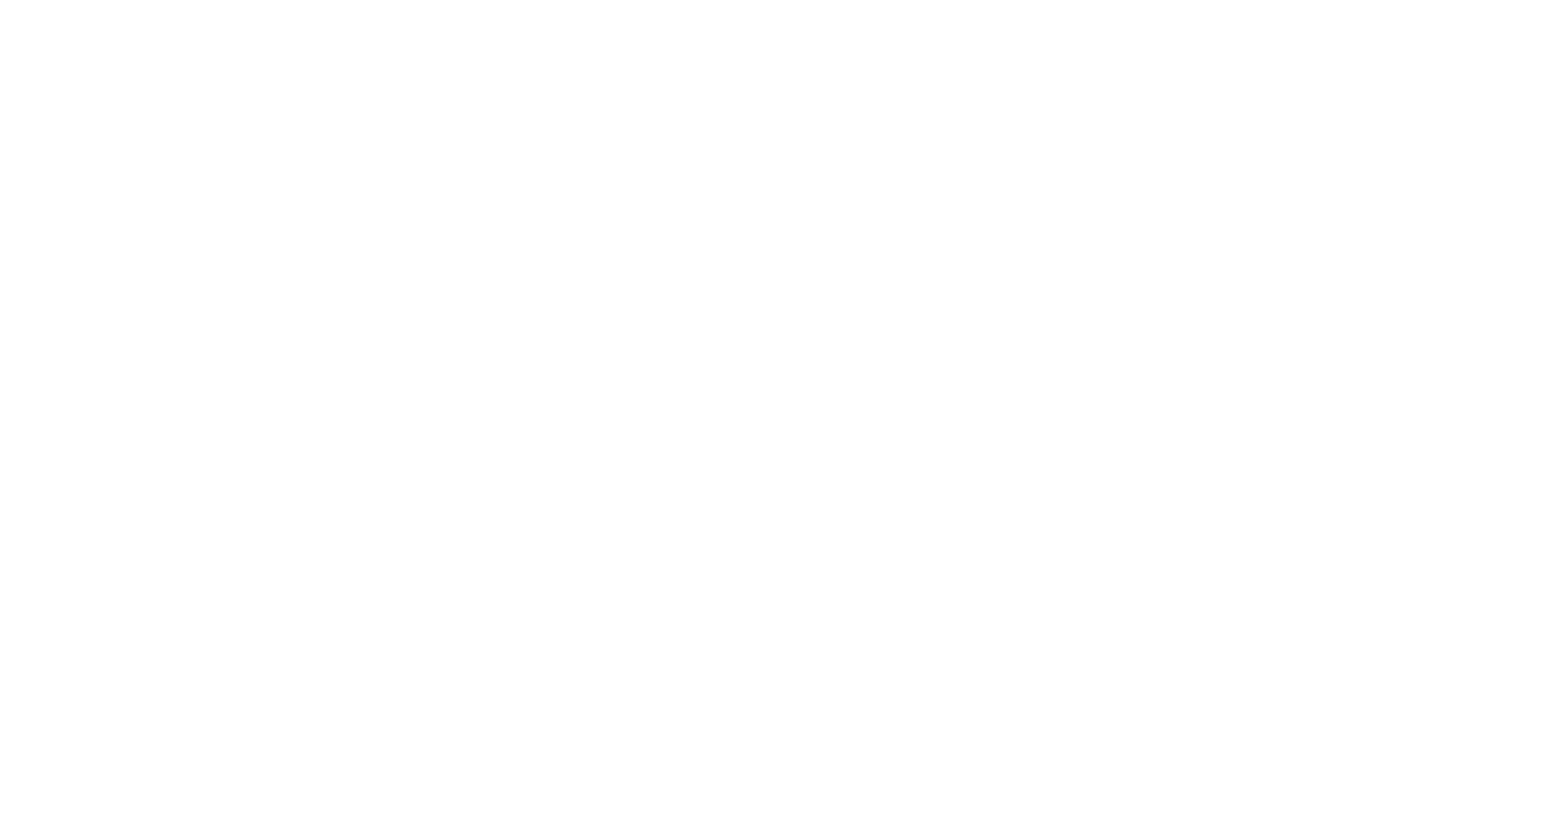 Five9 logo pour fonds sombres (PNG transparent)